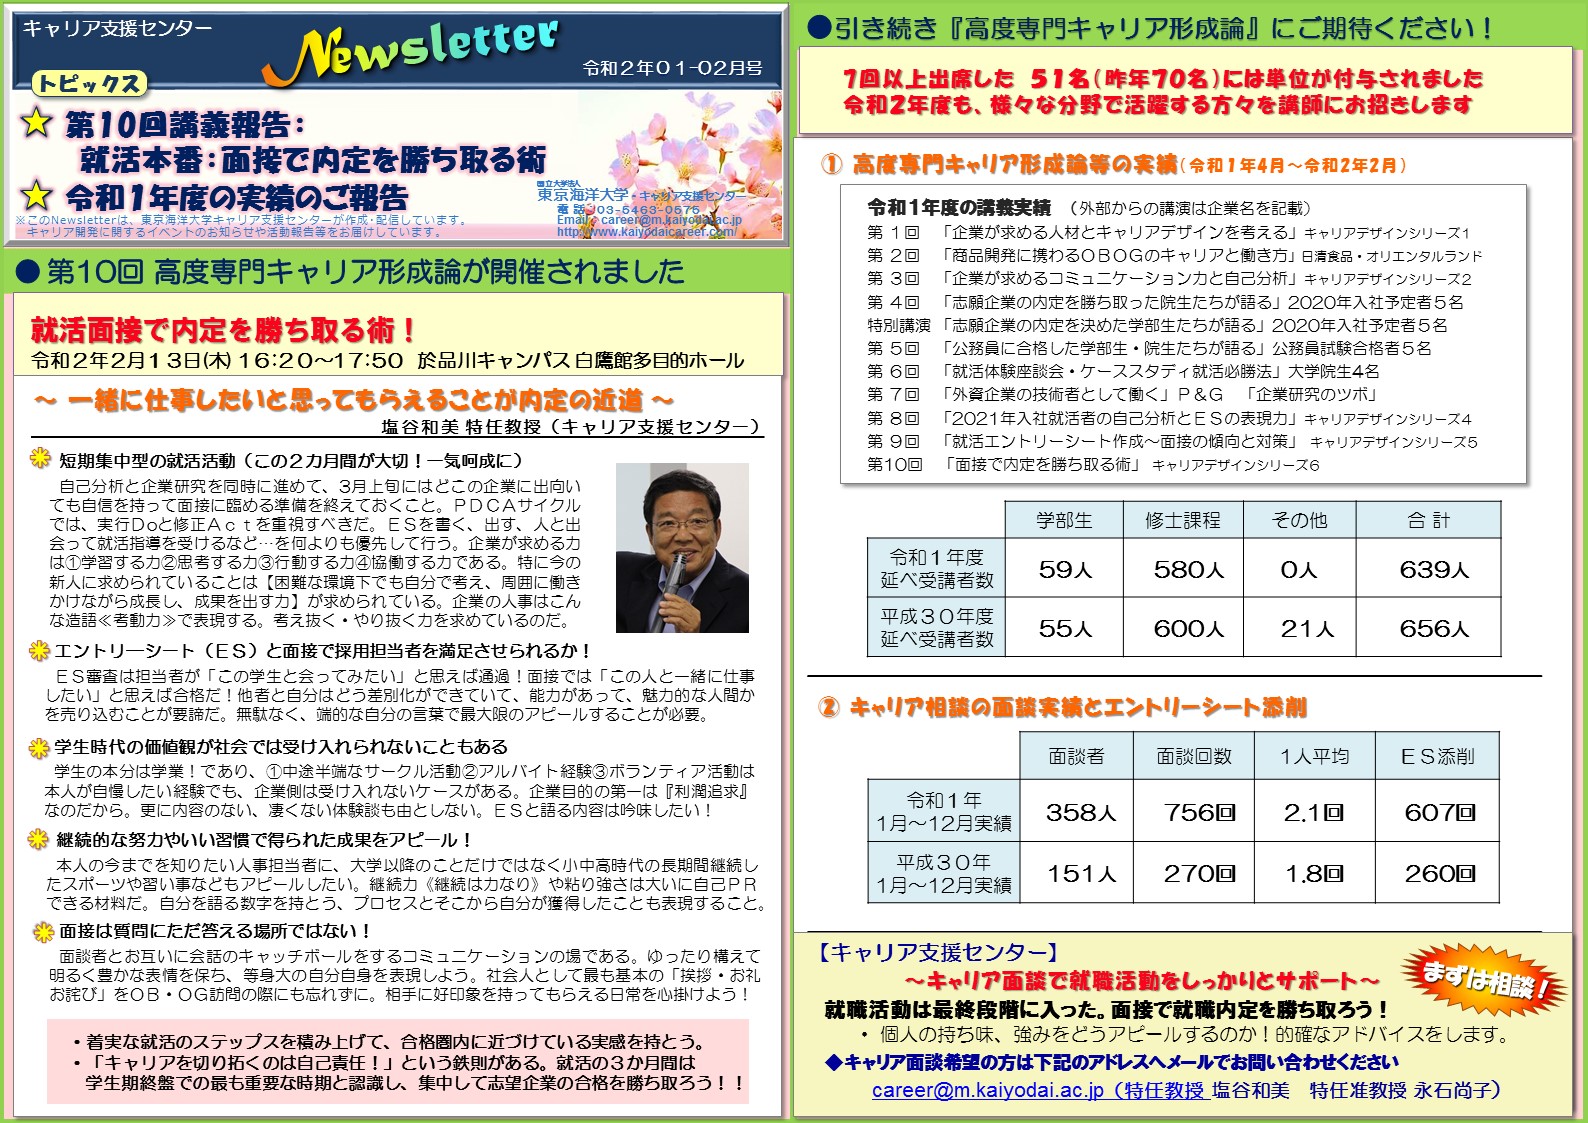 https://www.kaiyodaicareer.com/img/Newsletter_2020_01-02.jpg